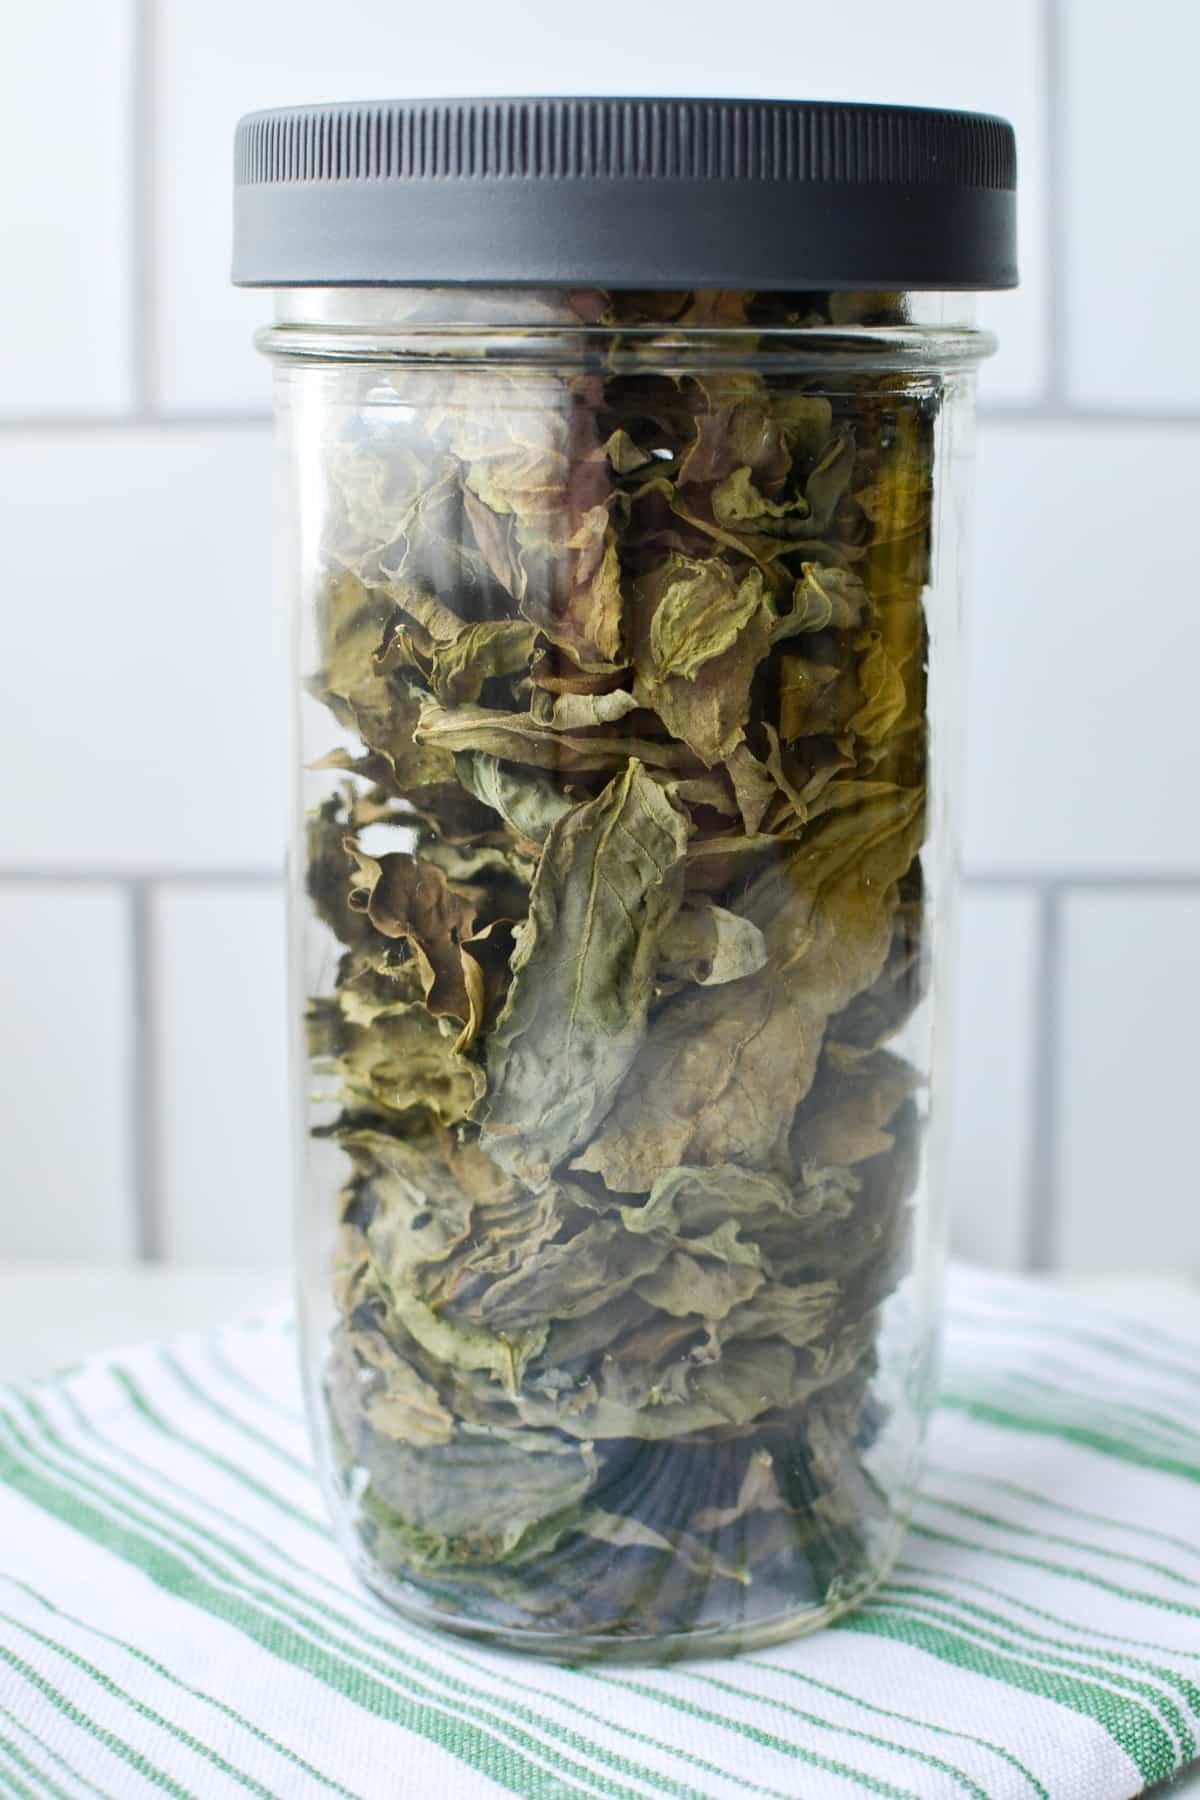 Adding dried basil to a glass jar.